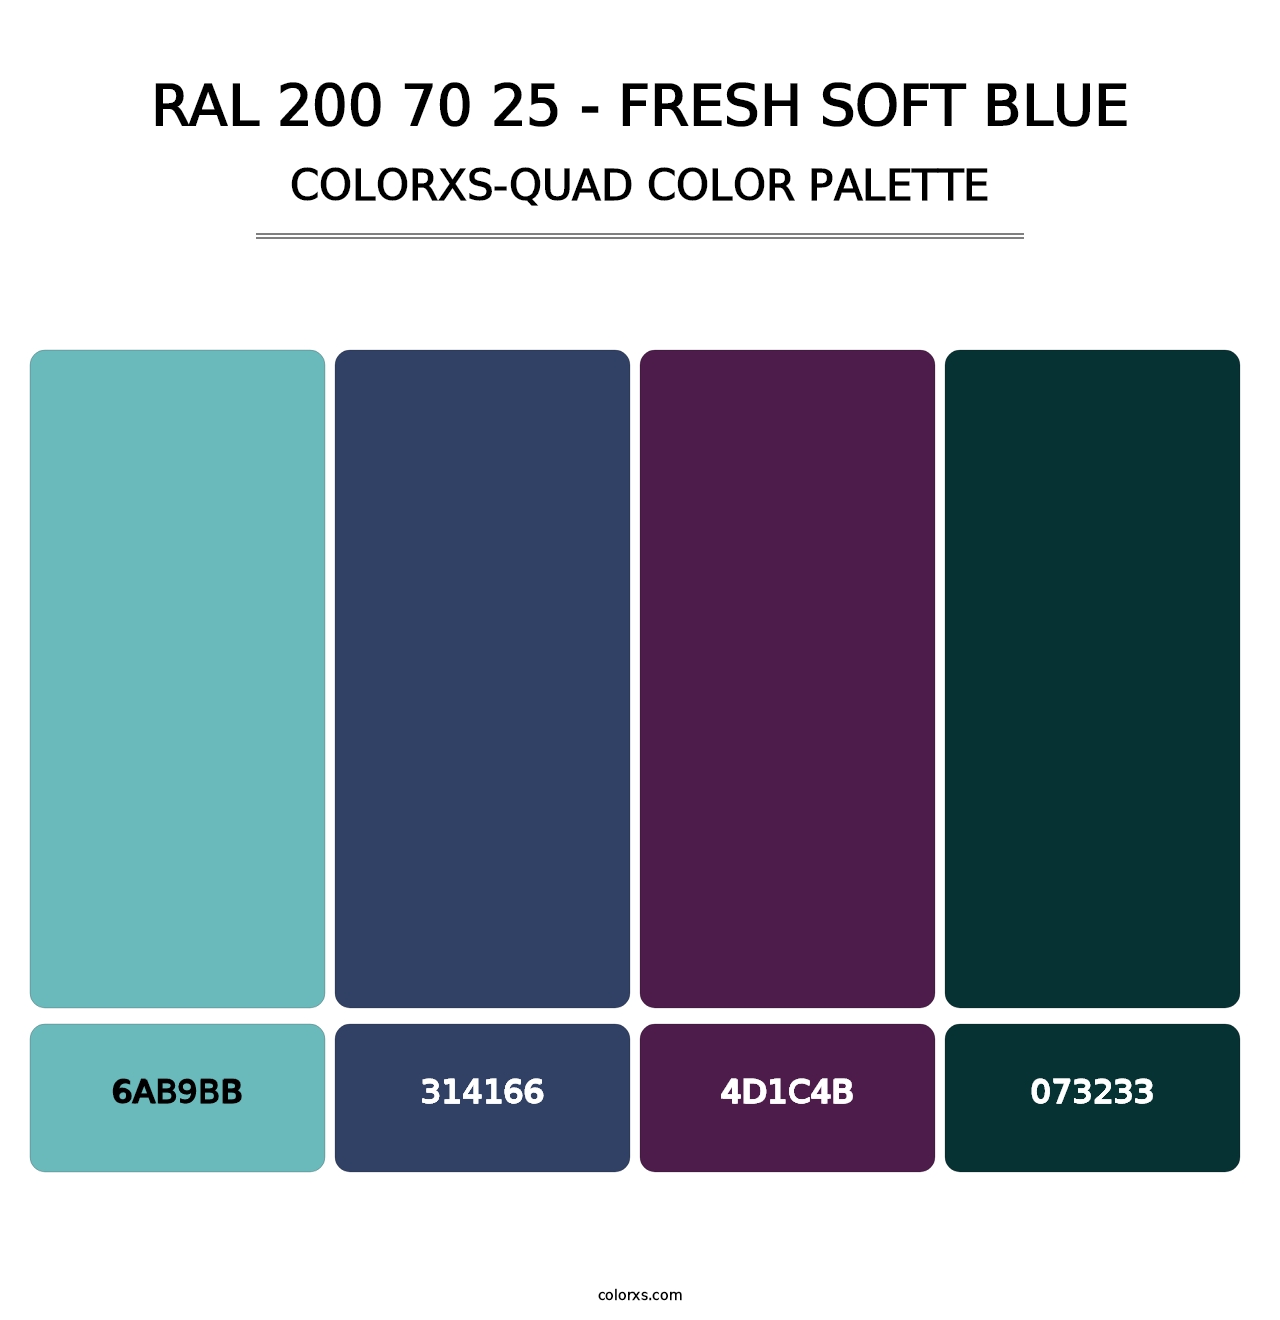 RAL 200 70 25 - Fresh Soft Blue - Colorxs Quad Palette